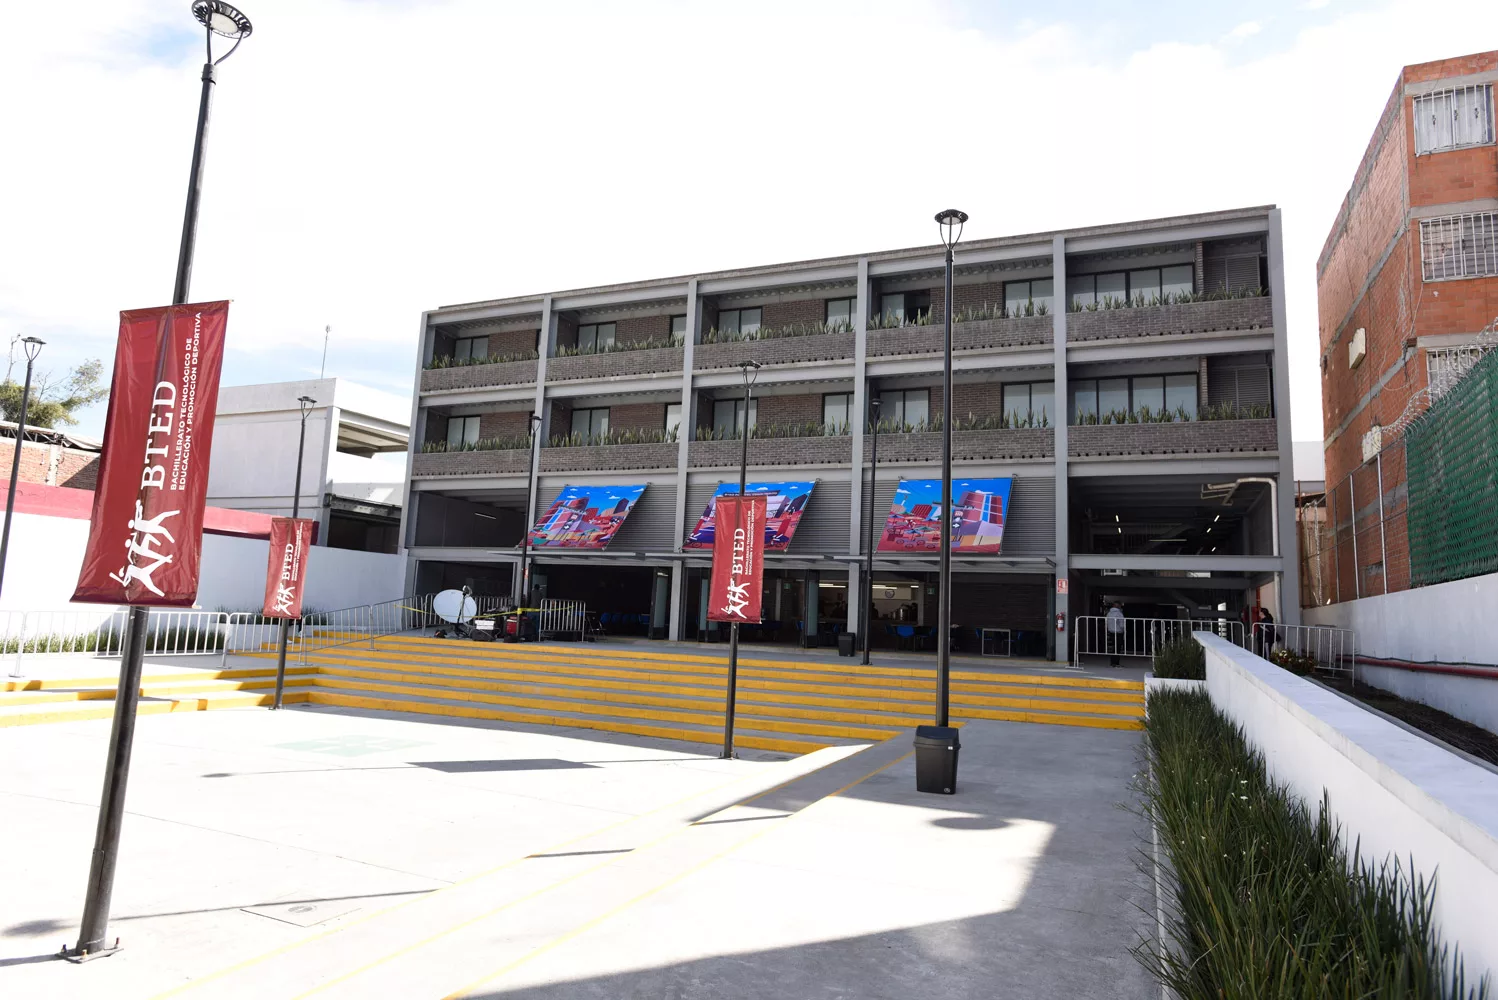 AMLO inaugura bachillerato técnico y deportivo en Tepito